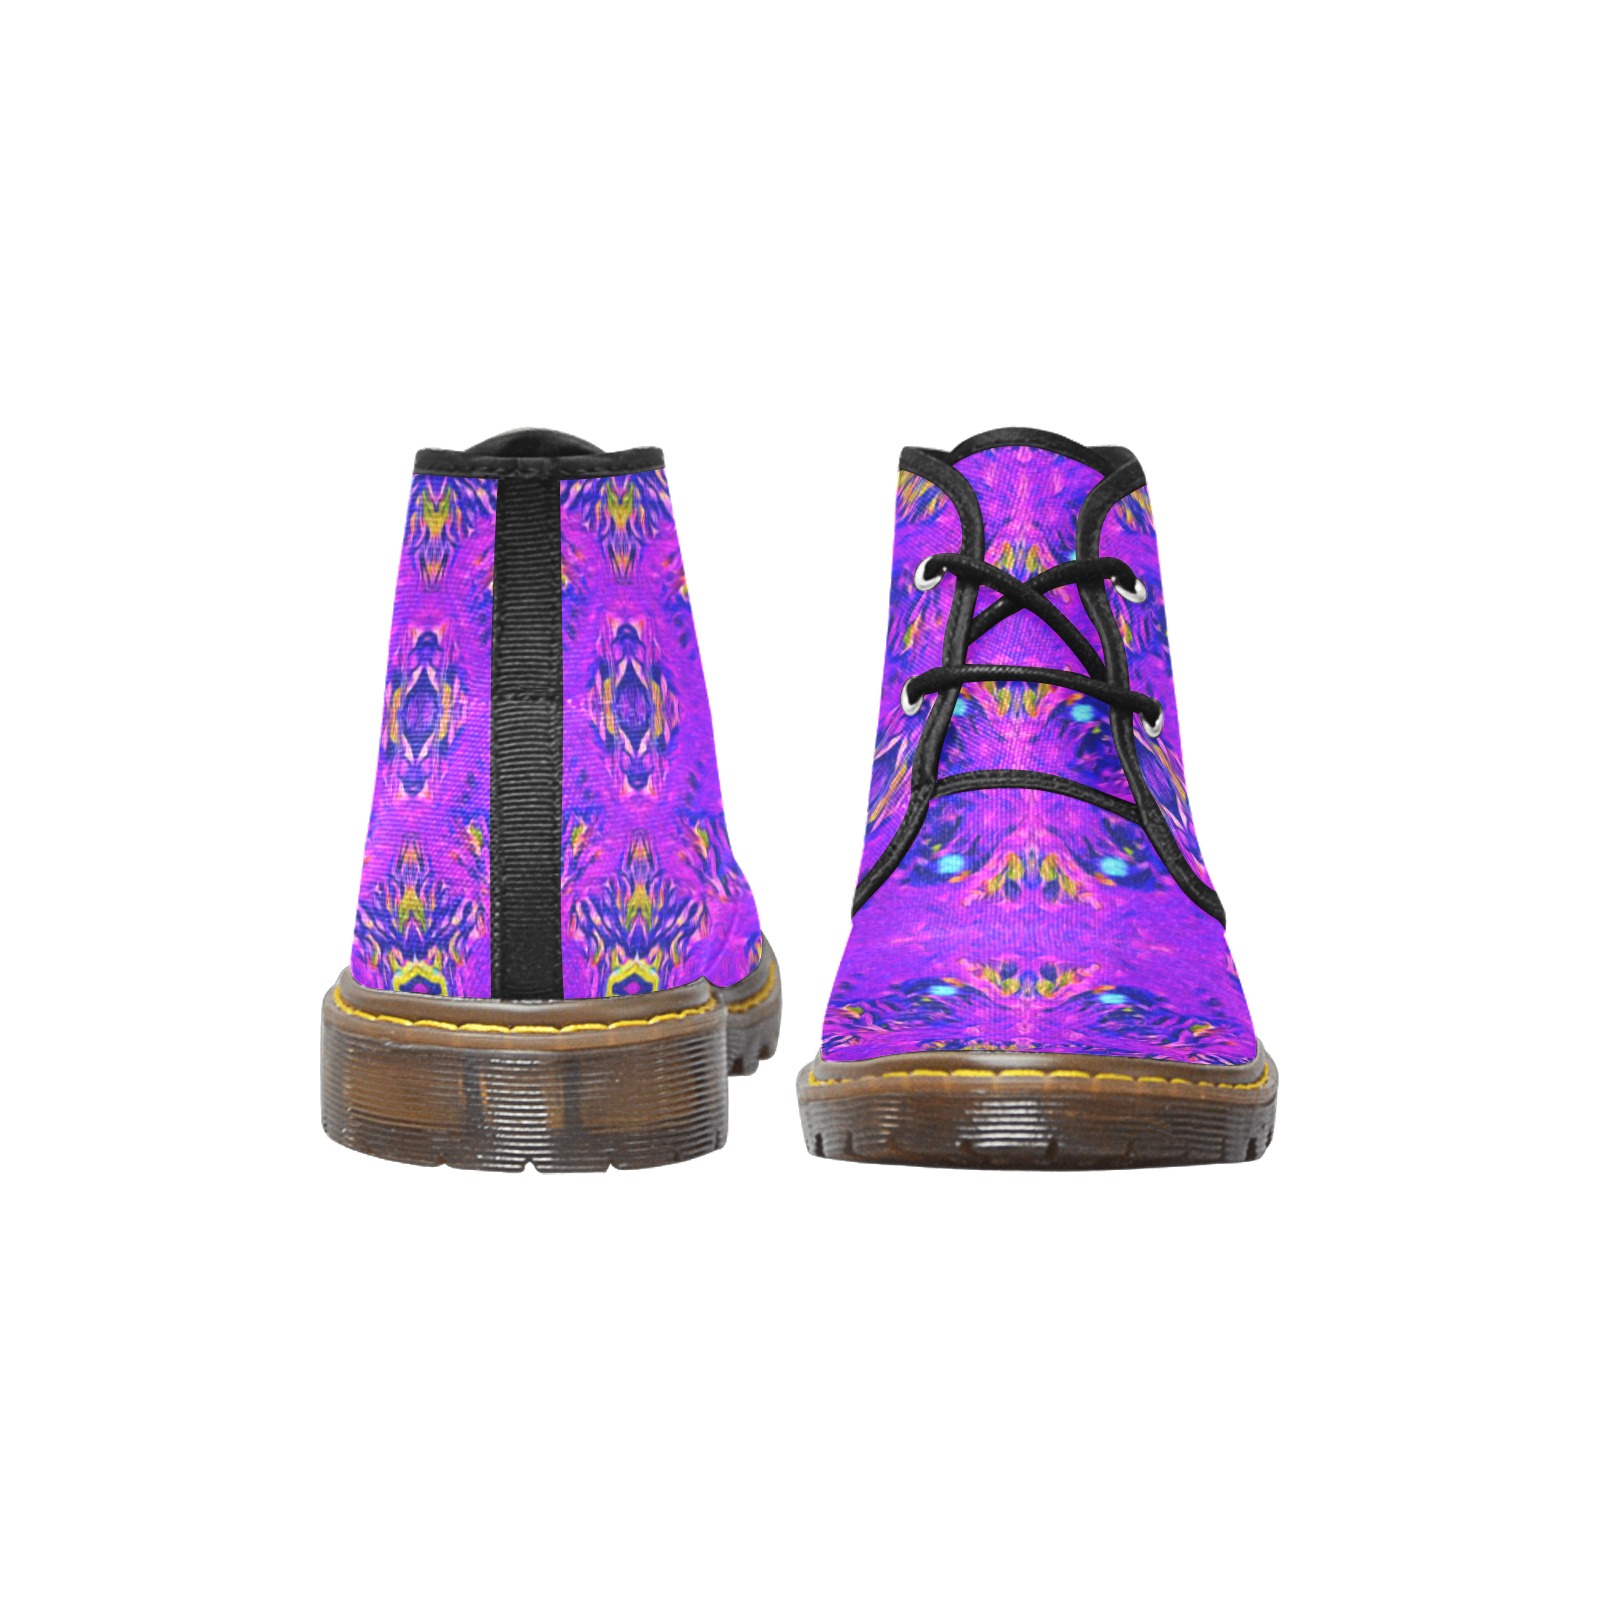 Midnight Women's Canvas Chukka Boots (Model 2402-1)